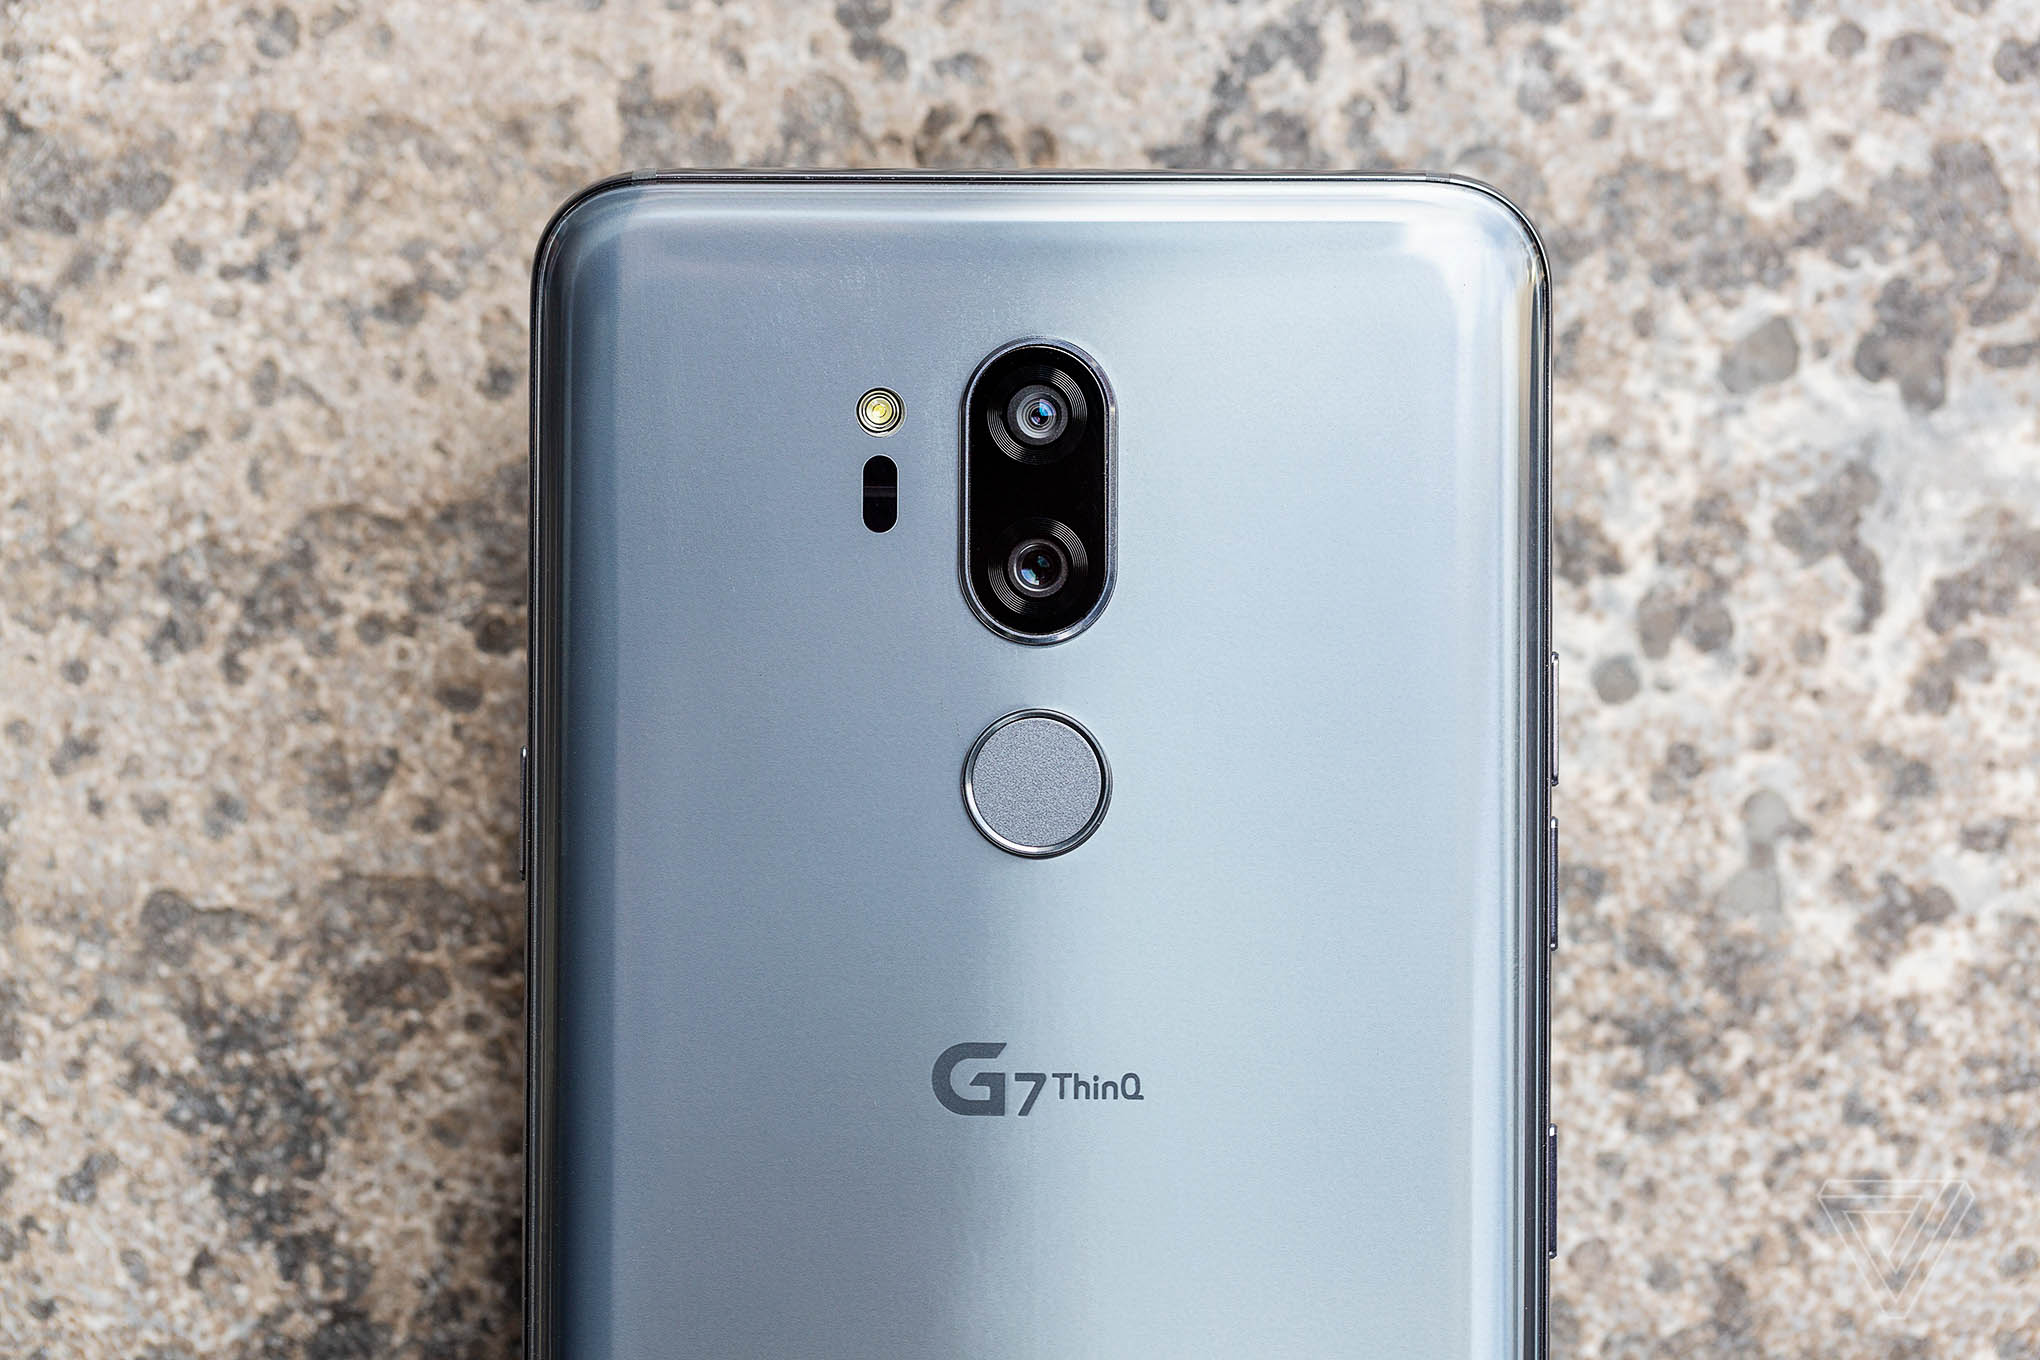 ال جی G7 ThinQ بصورت رسمی معرفی شد / با این گوشی جذاب آشنا شوید 